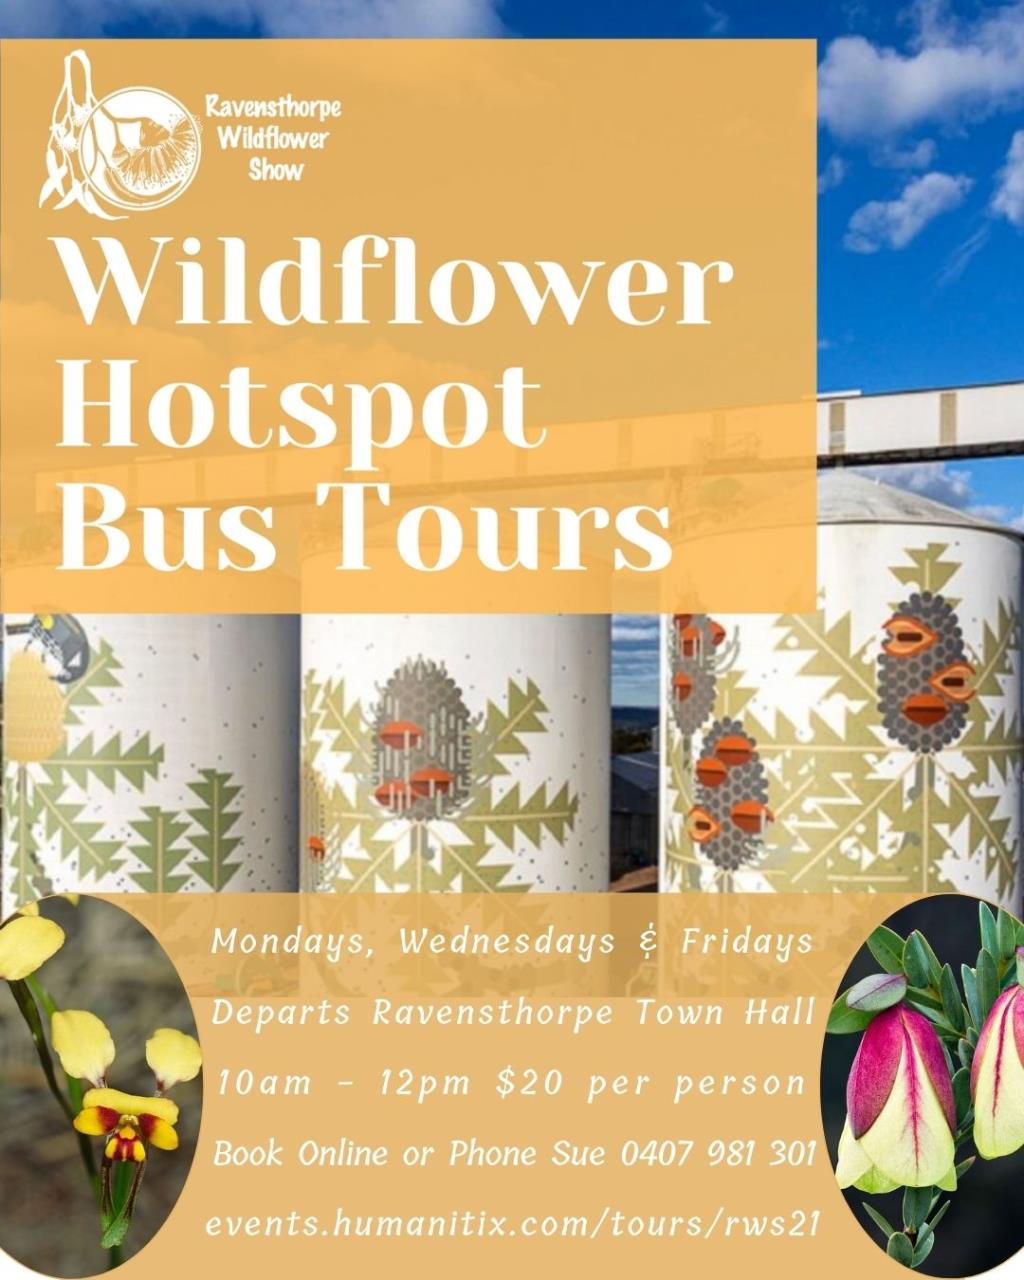 Wildflower Hotspot Bus Tours